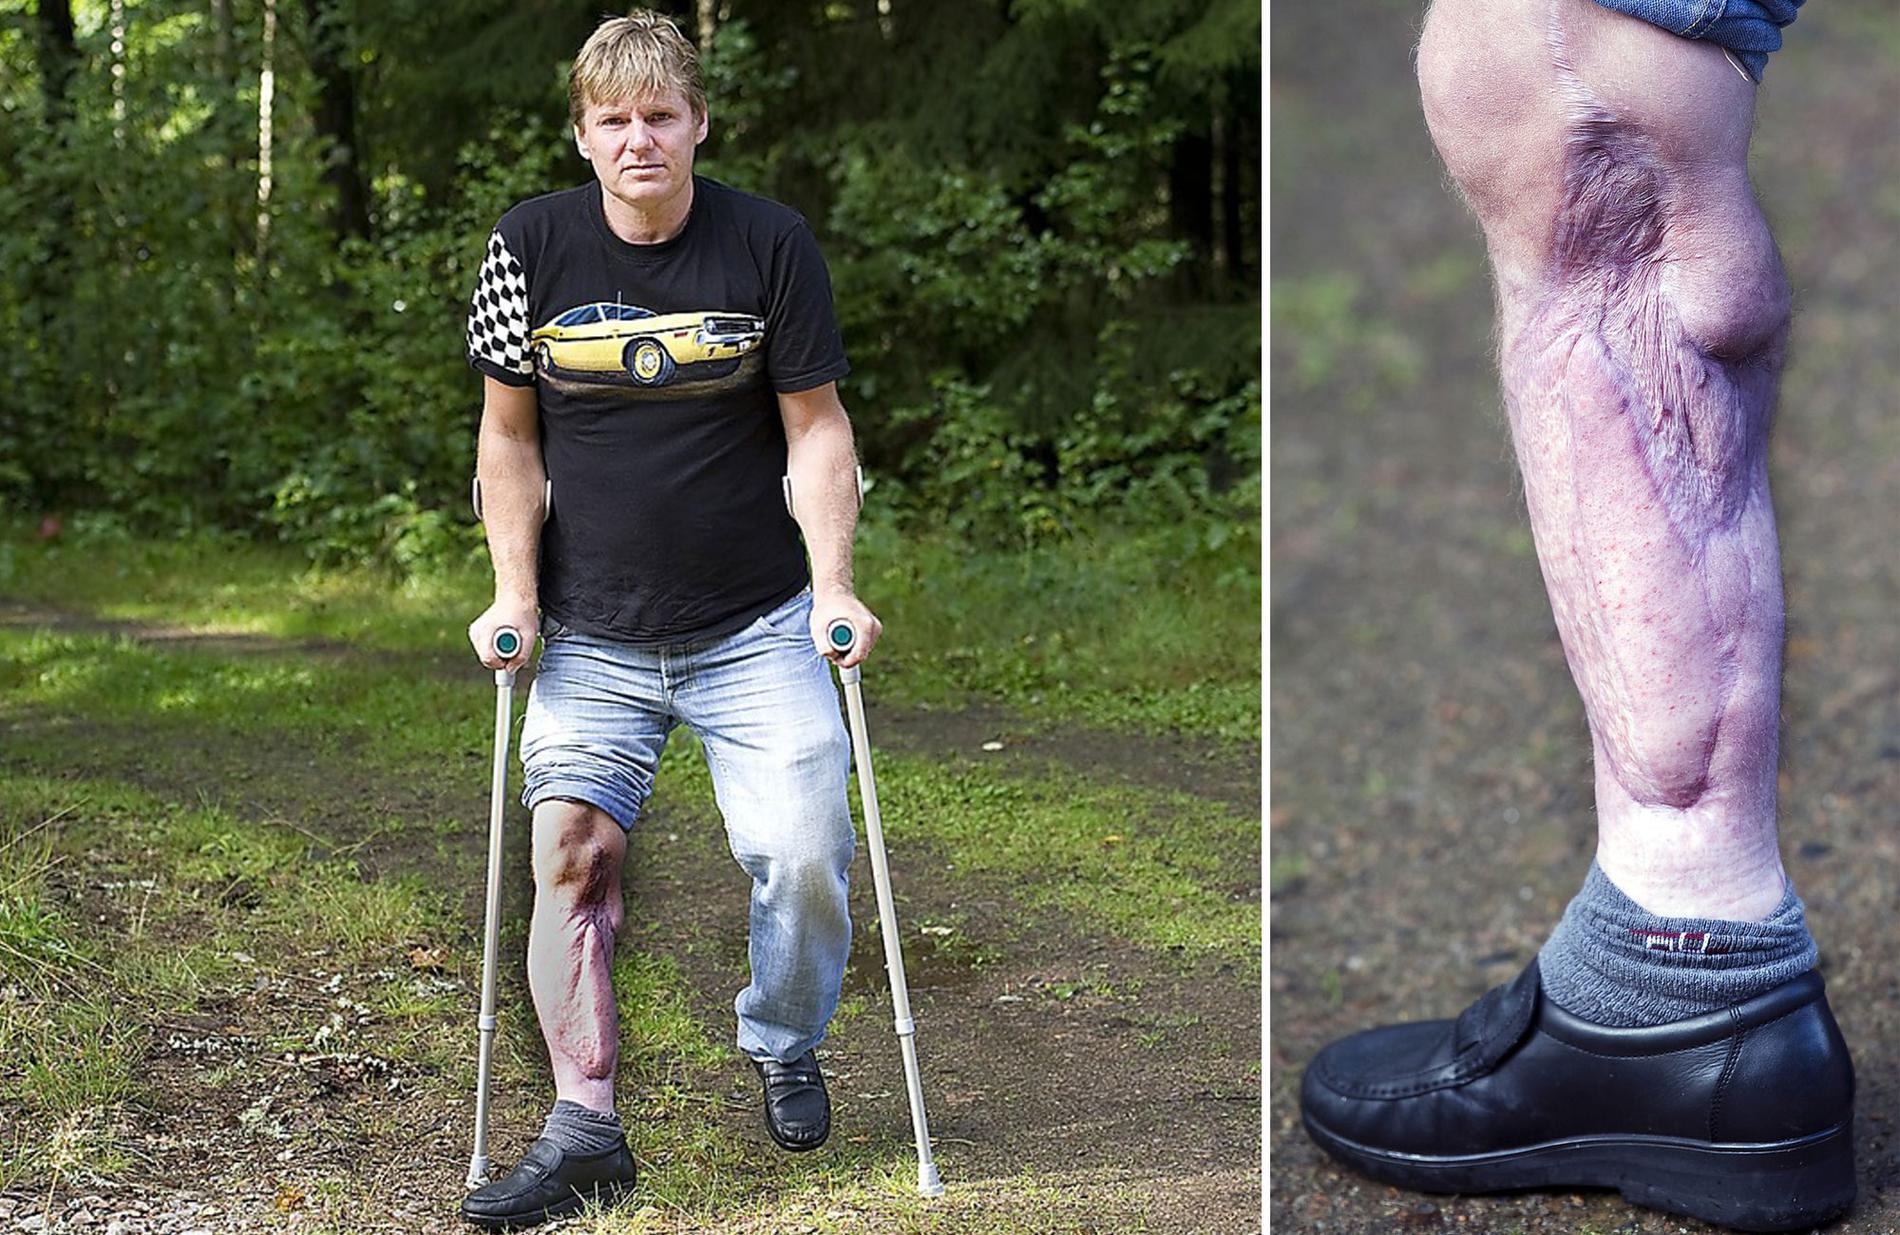 ”VIKTIGT ATT INGRIPA NÄR NÅGOT ÄR FEL” Trots att Tonny Sjödahl, 44, har tvingats till operation av sitt skadade ben 15 gånger har hans syn på civilkurage inte förändrats.